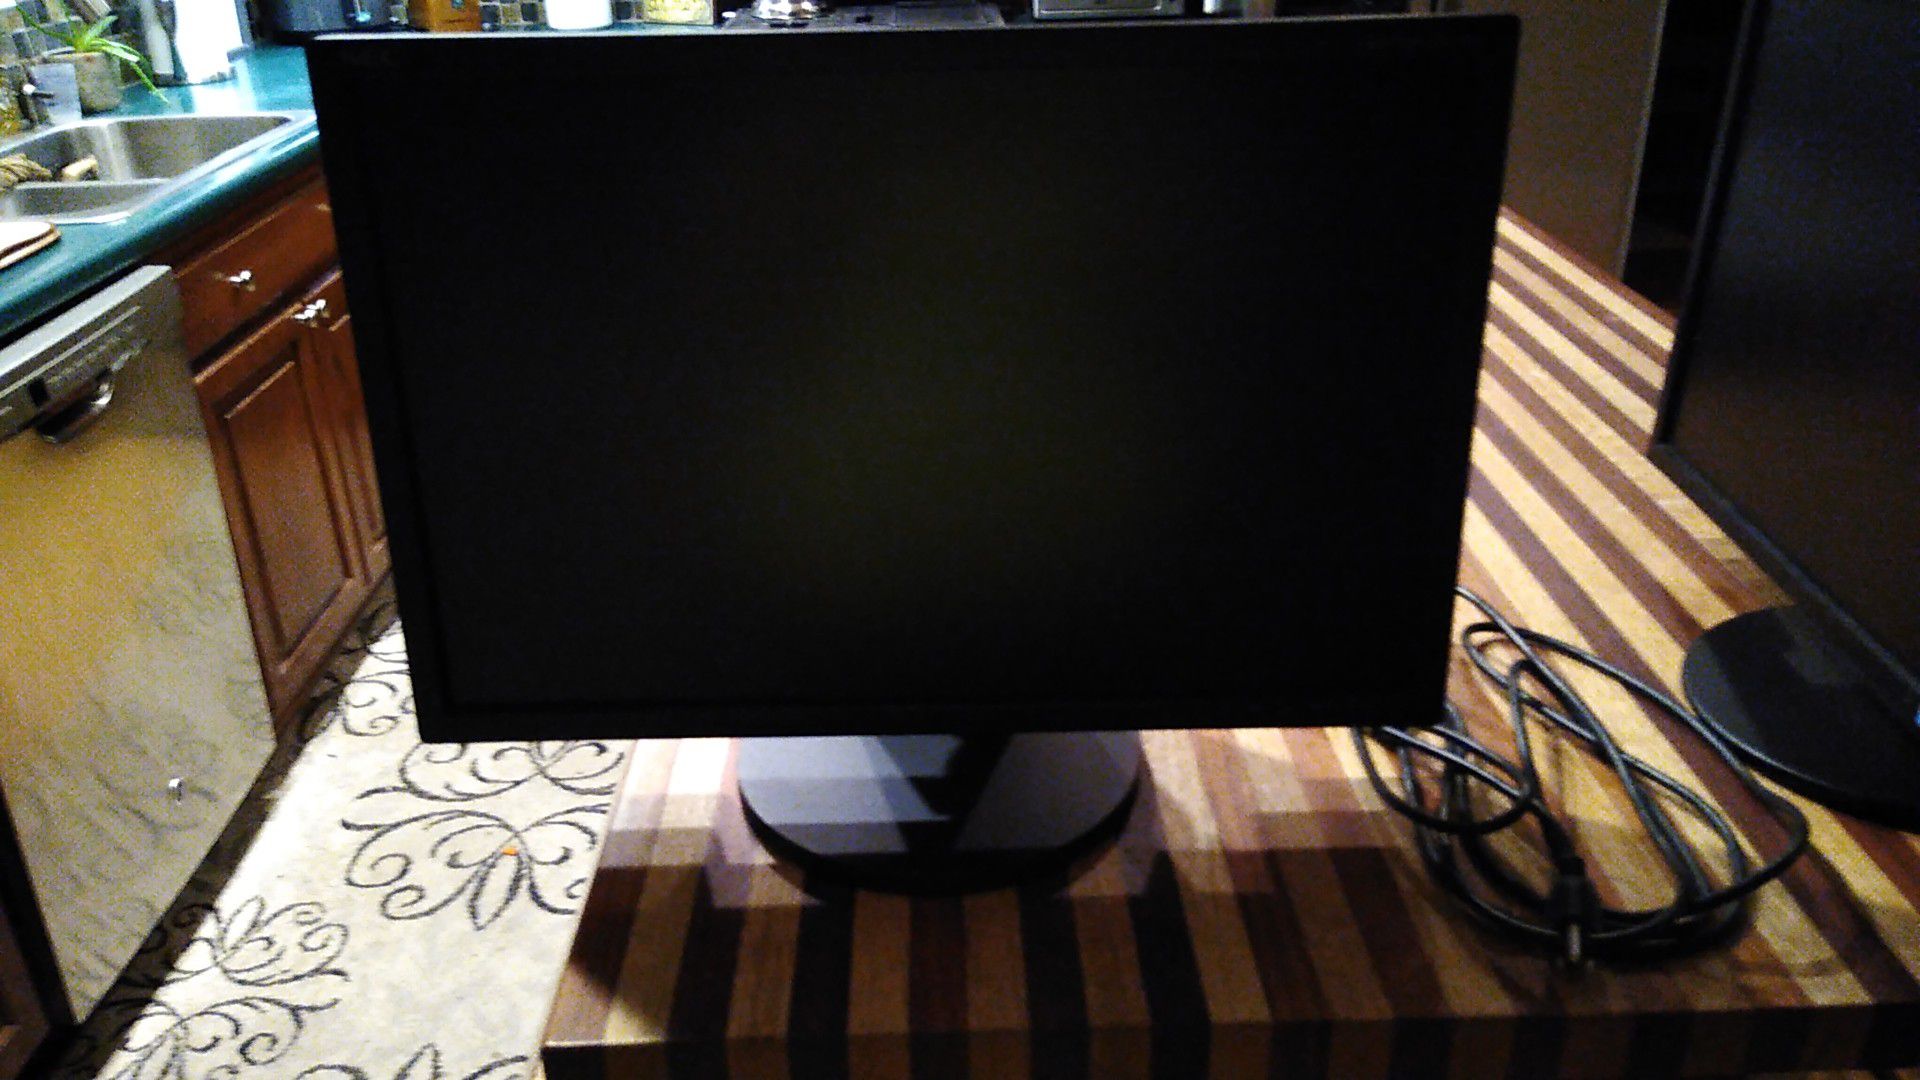 NEC 22 inch computer monitor